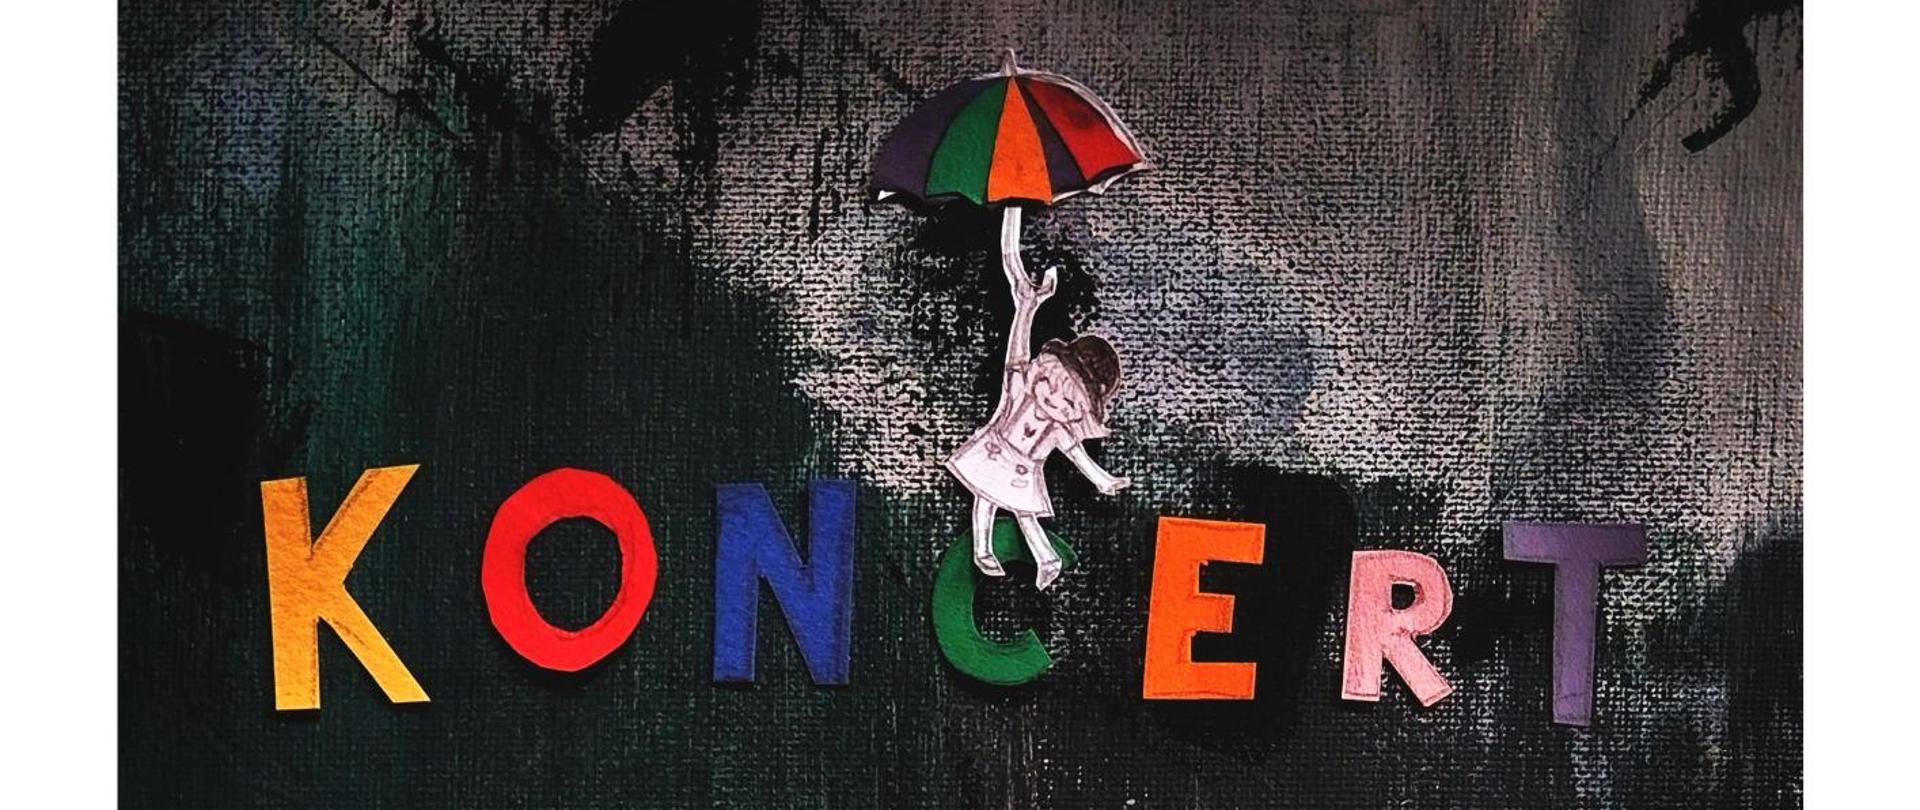 Na czarnym tle szkic dziewczynki w kapeluszu, w górnej części kolorowy napis Koncert Aleksandra Malik oraz szkic dziewczynki z kolorową parasolką, w dolnej części dane dotyczące wydarzenia oraz logo szkoły.